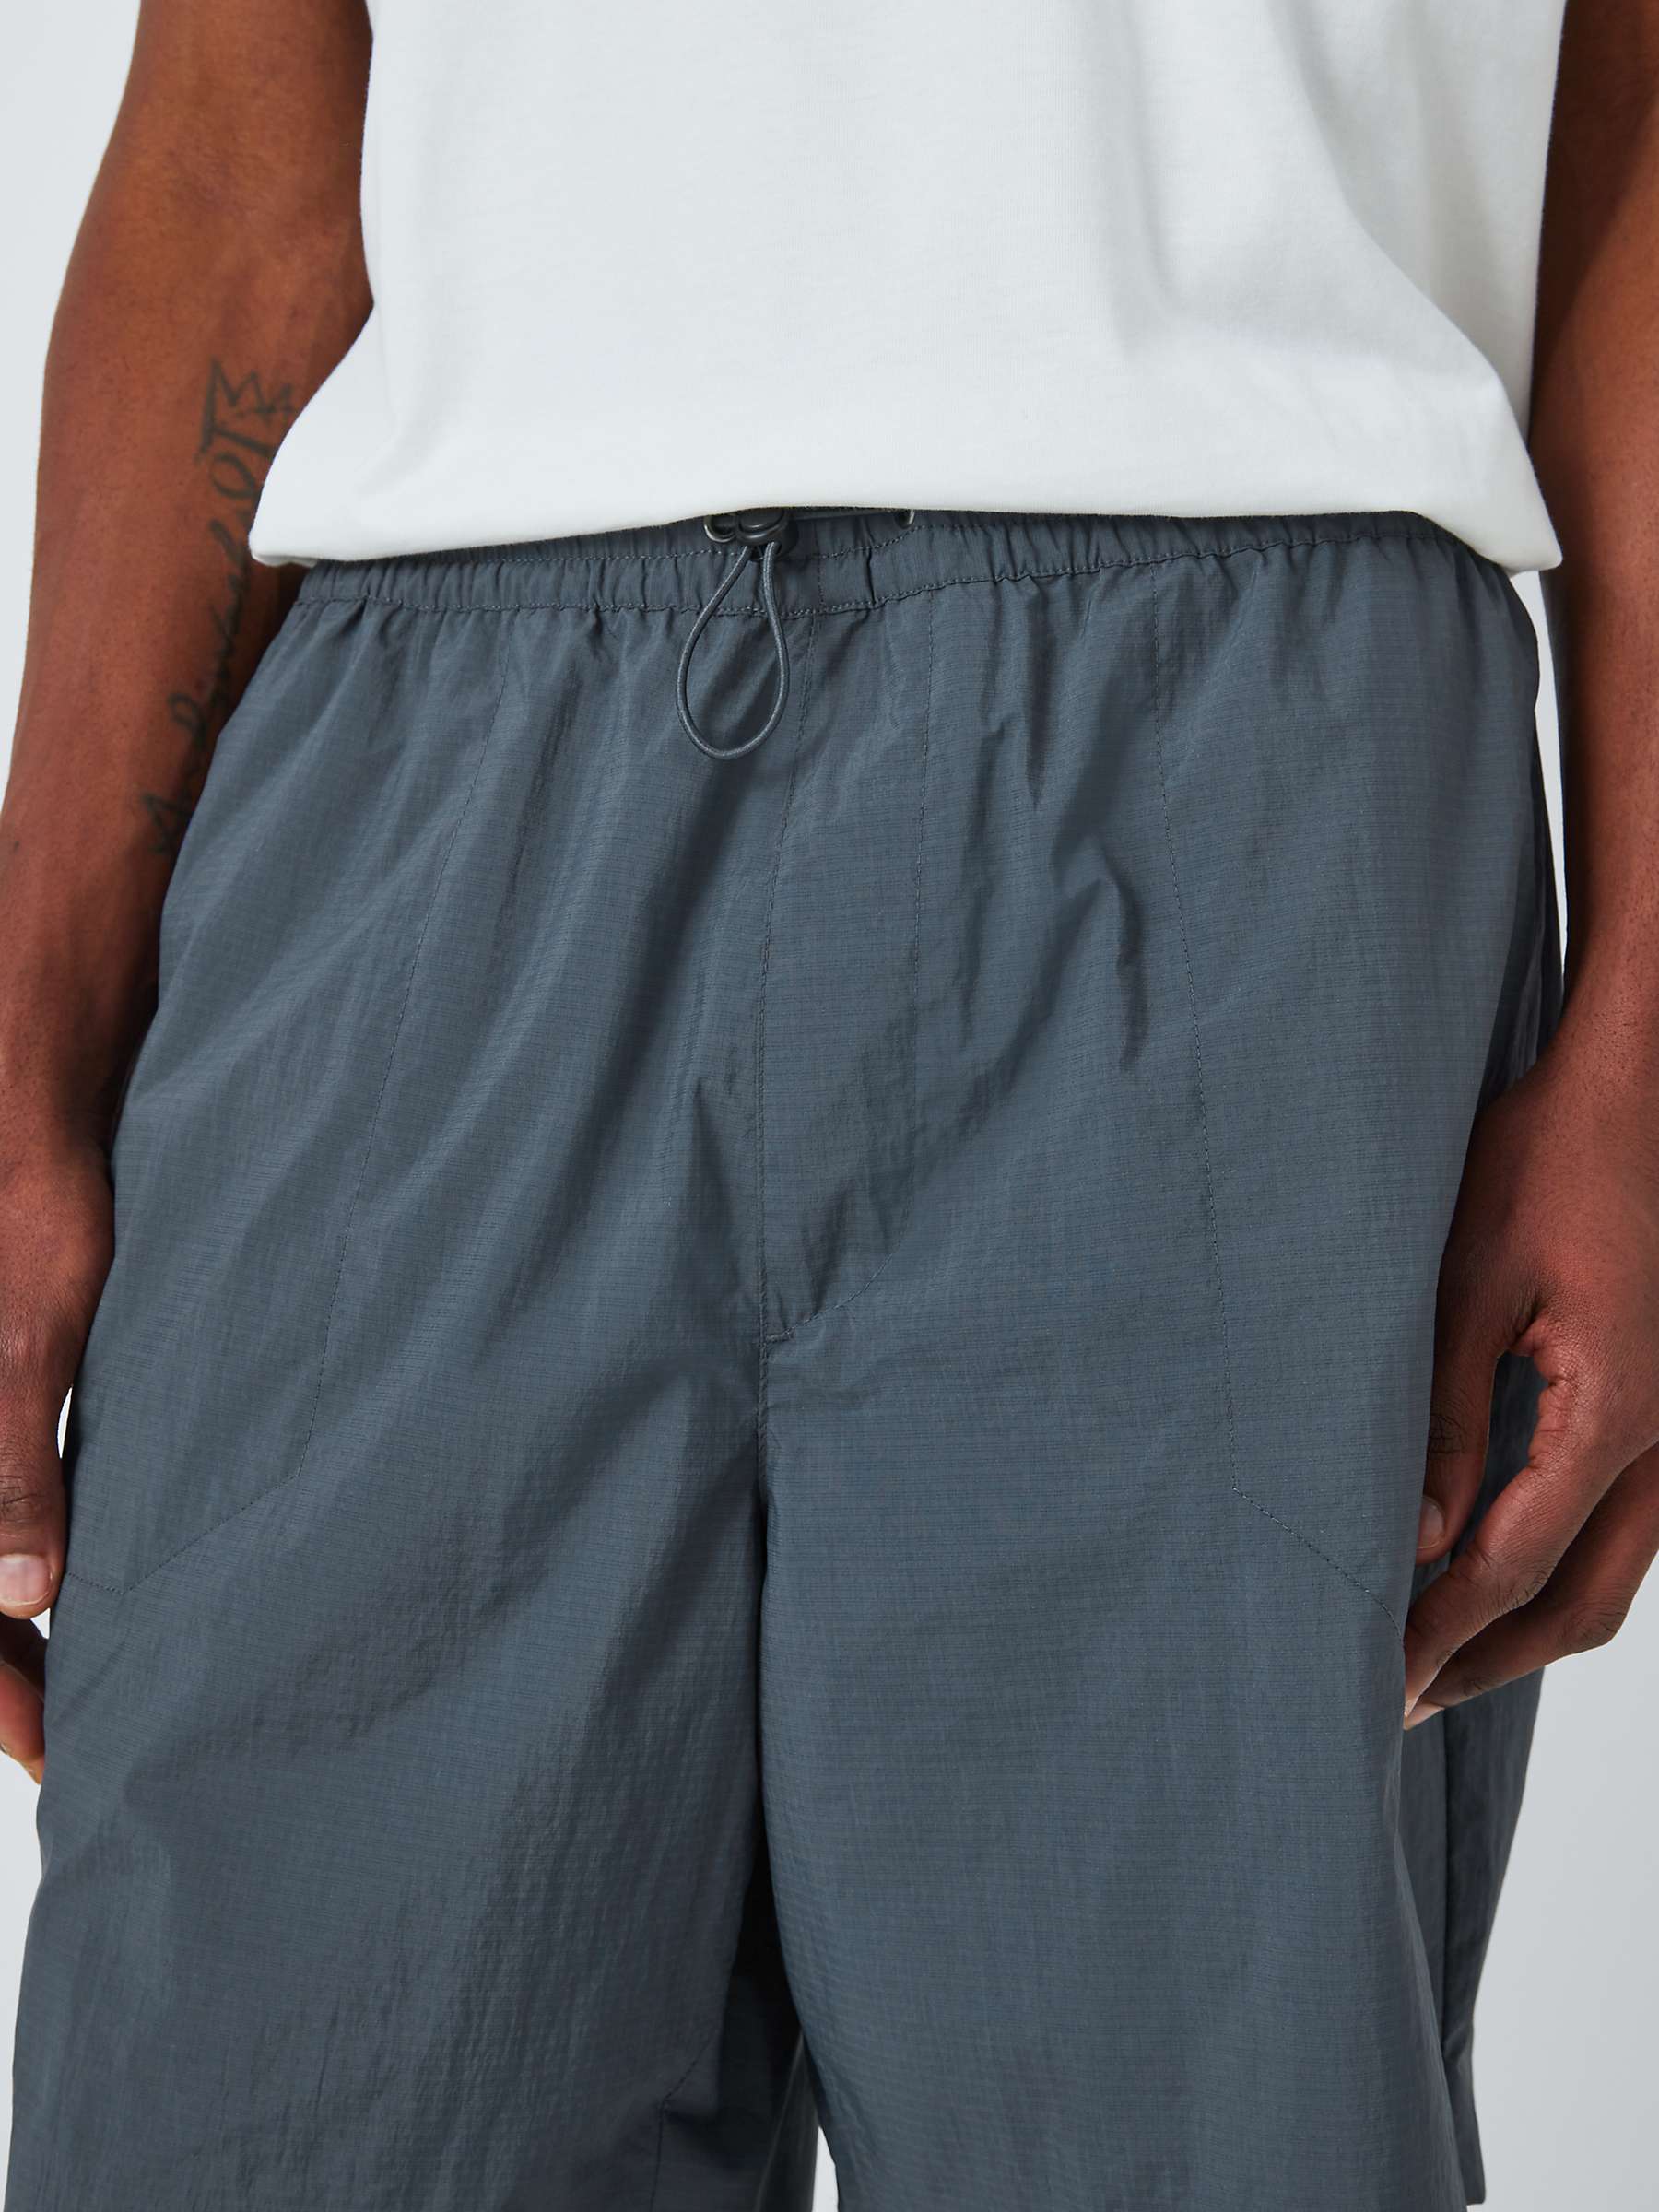 Buy Kin Men's Nylon Shorts Online at johnlewis.com